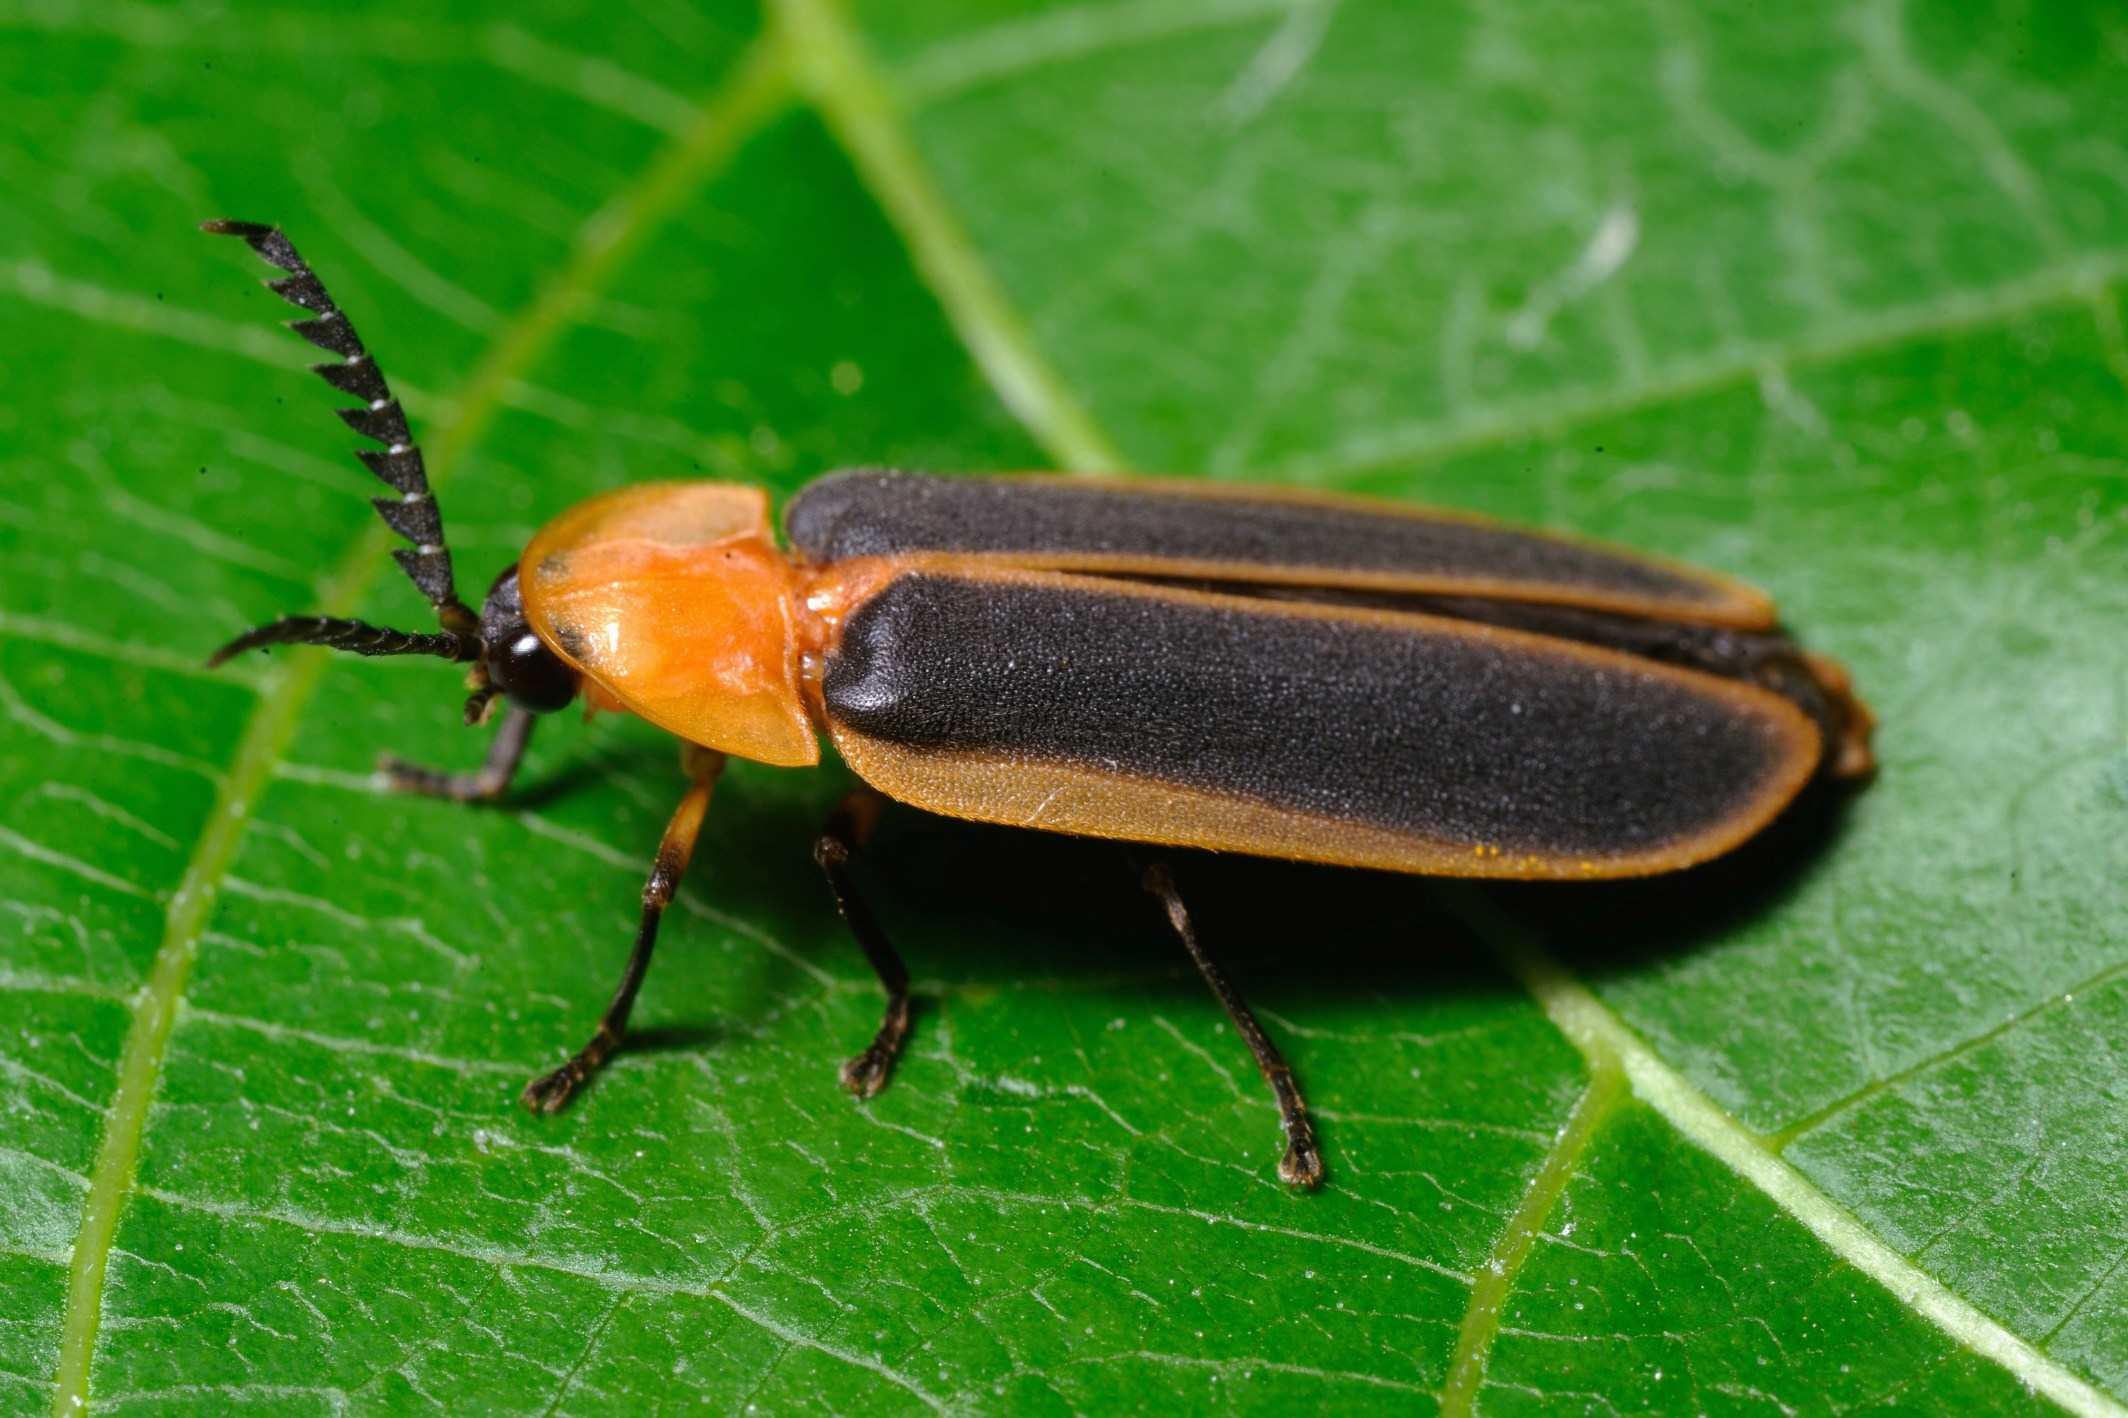 本澳發現的螢火蟲 - 大陸窗螢雄性成蟲